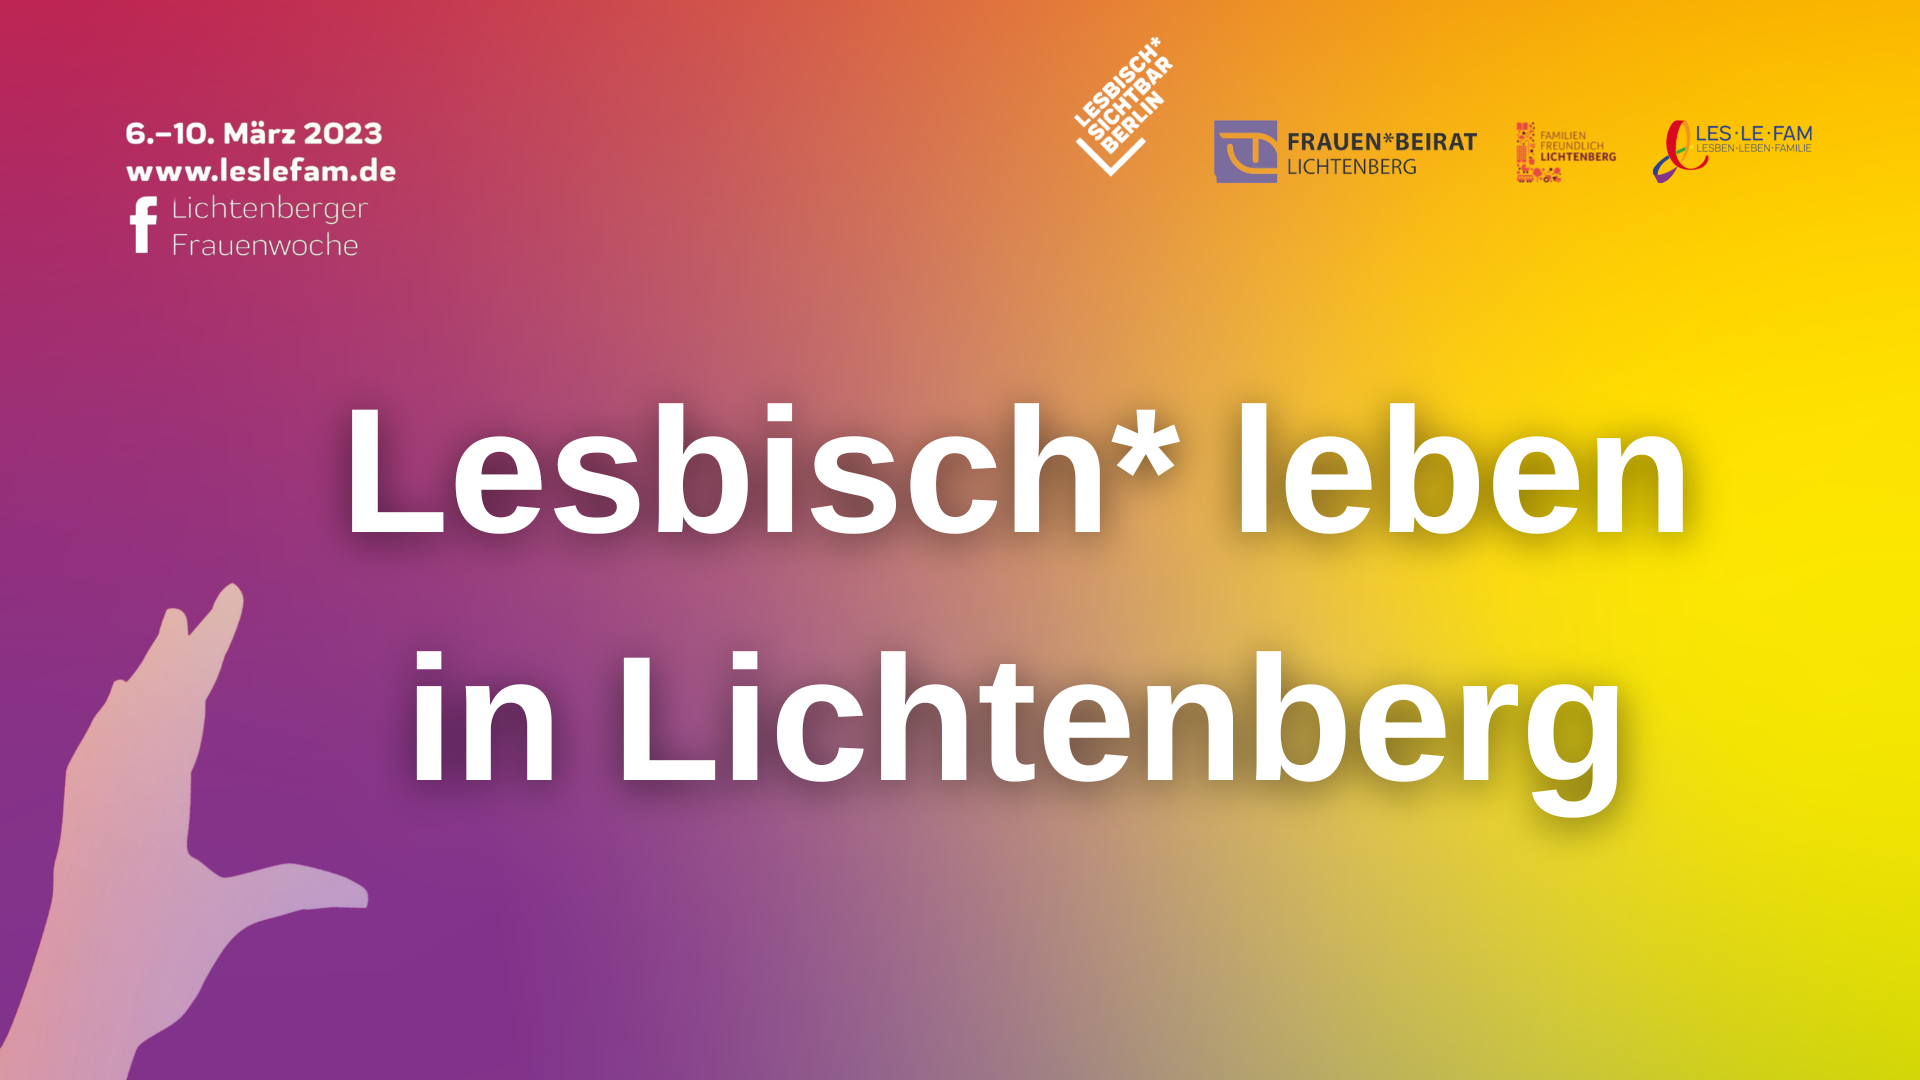 Lichtenberger Frauen*woche: Lesbisch* leben im Bezirk